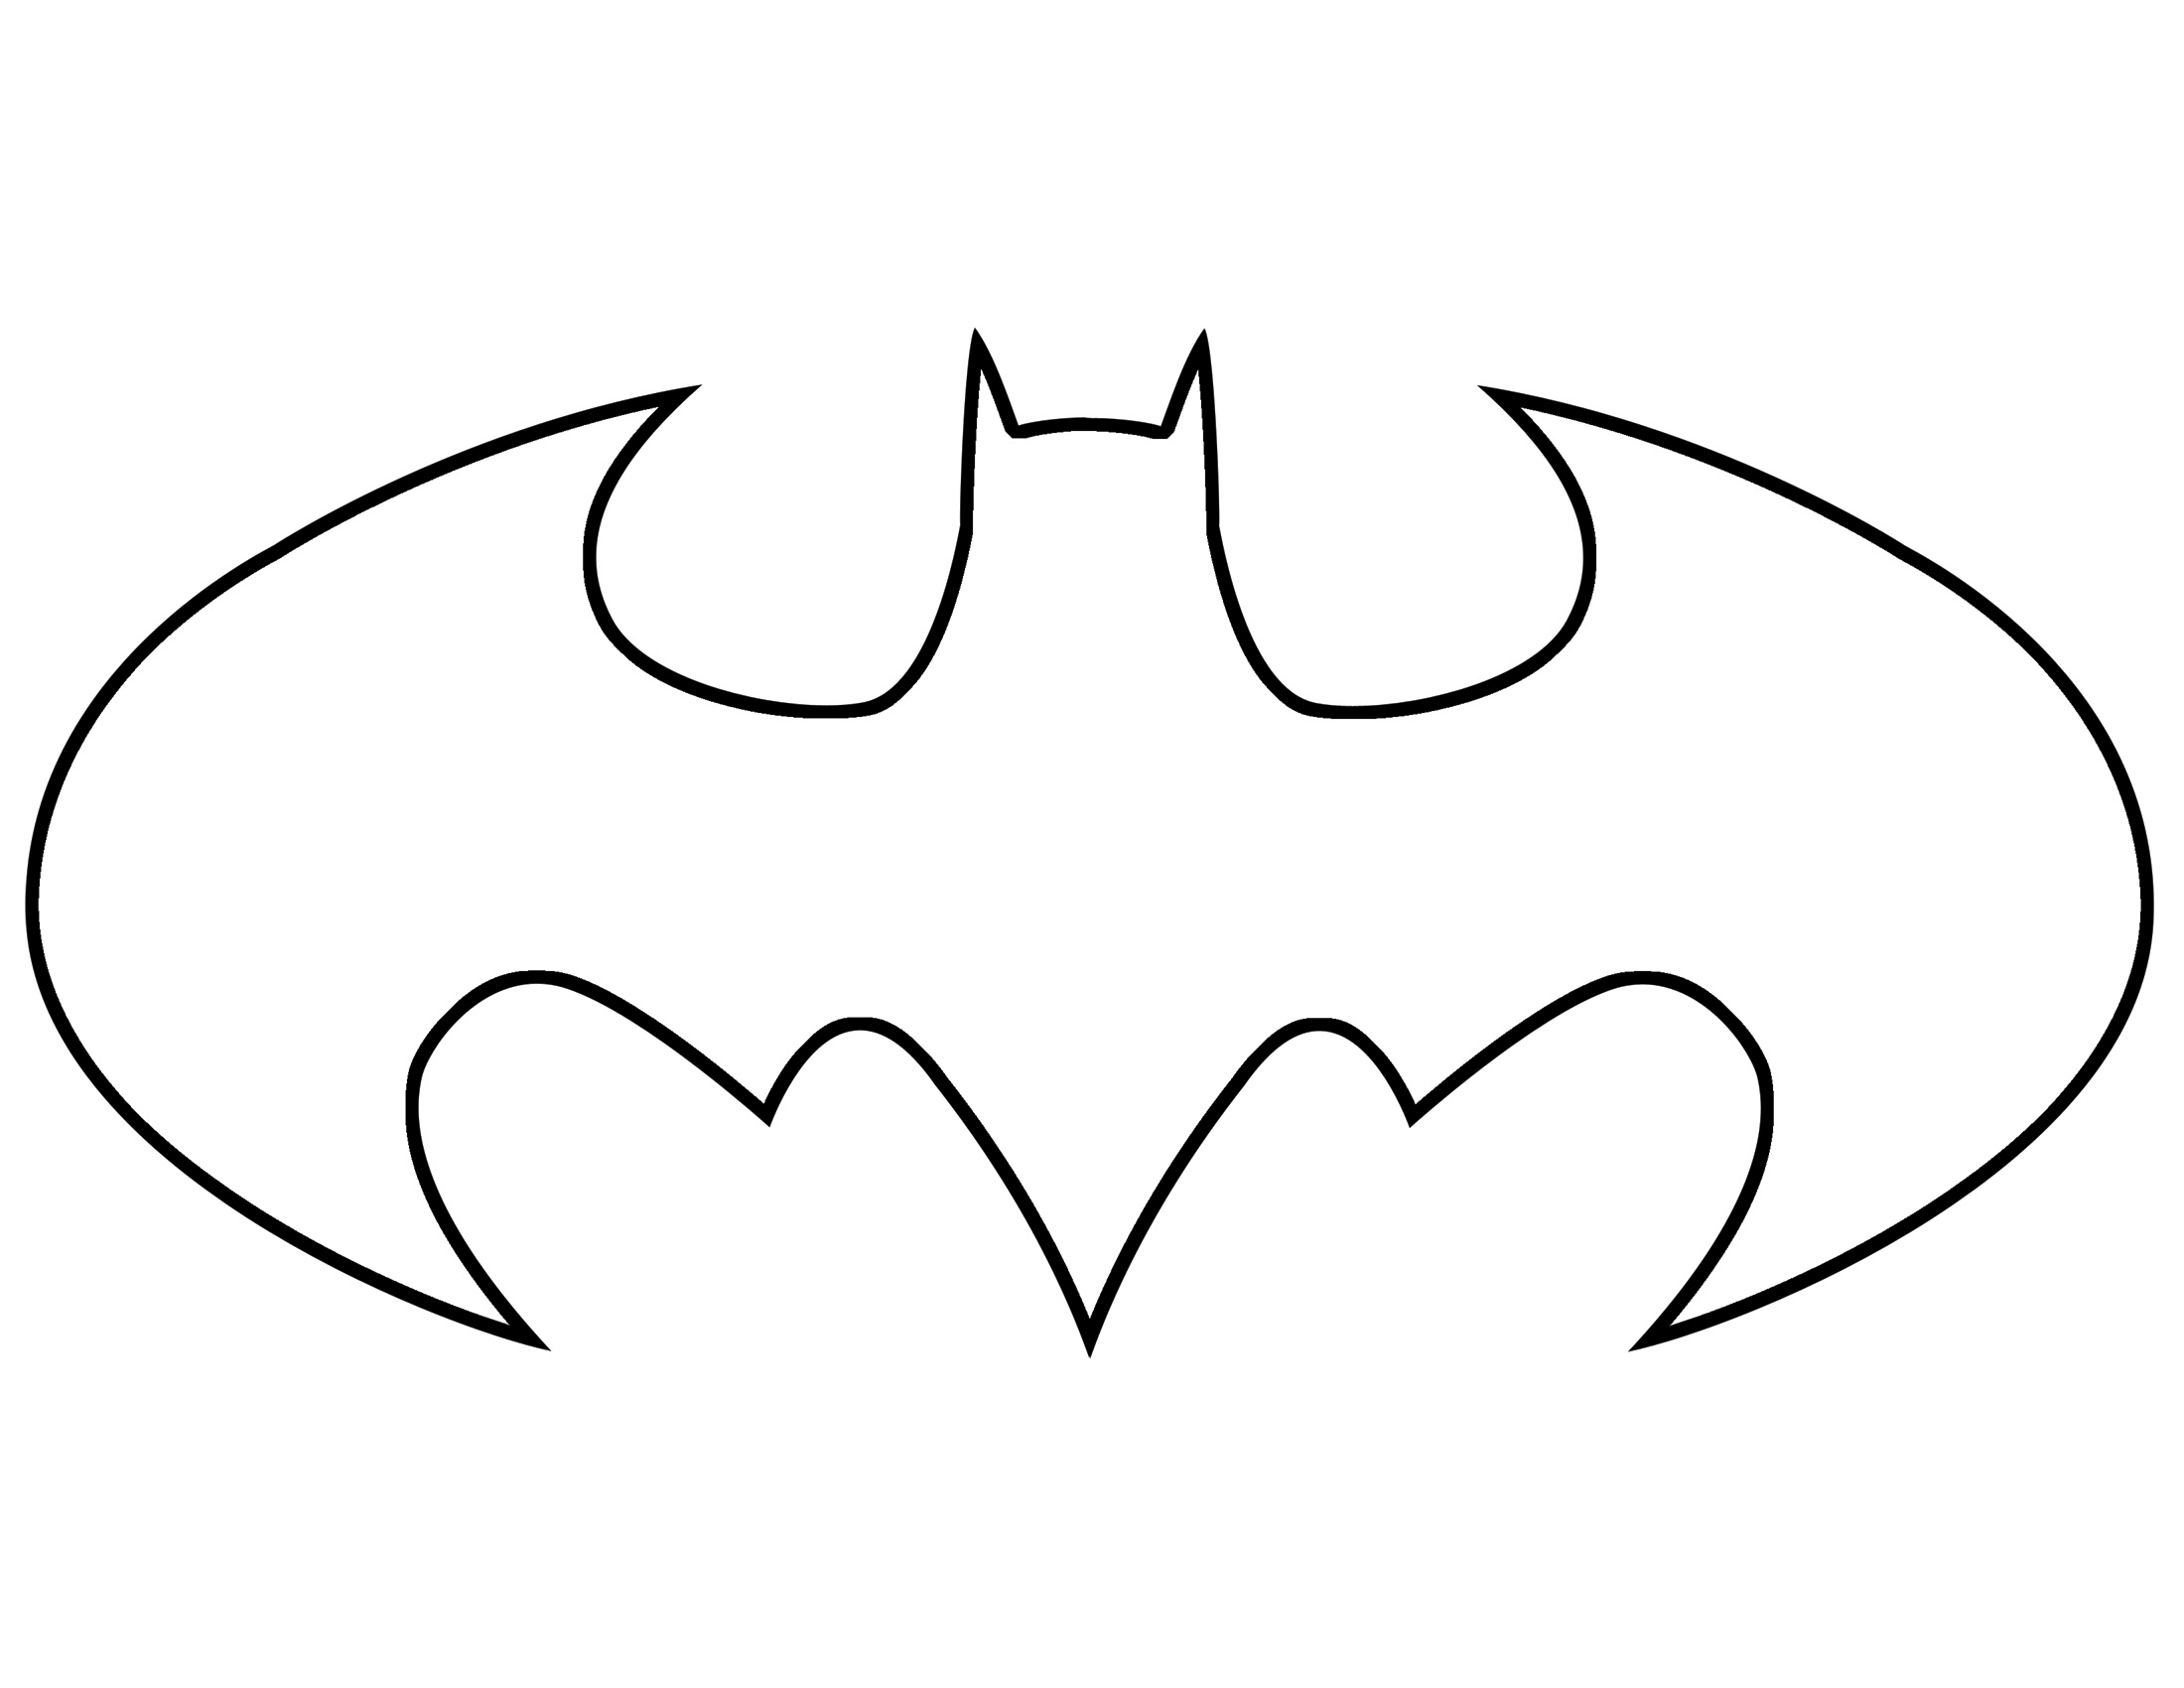 Batman Logo - ClipArt Best .